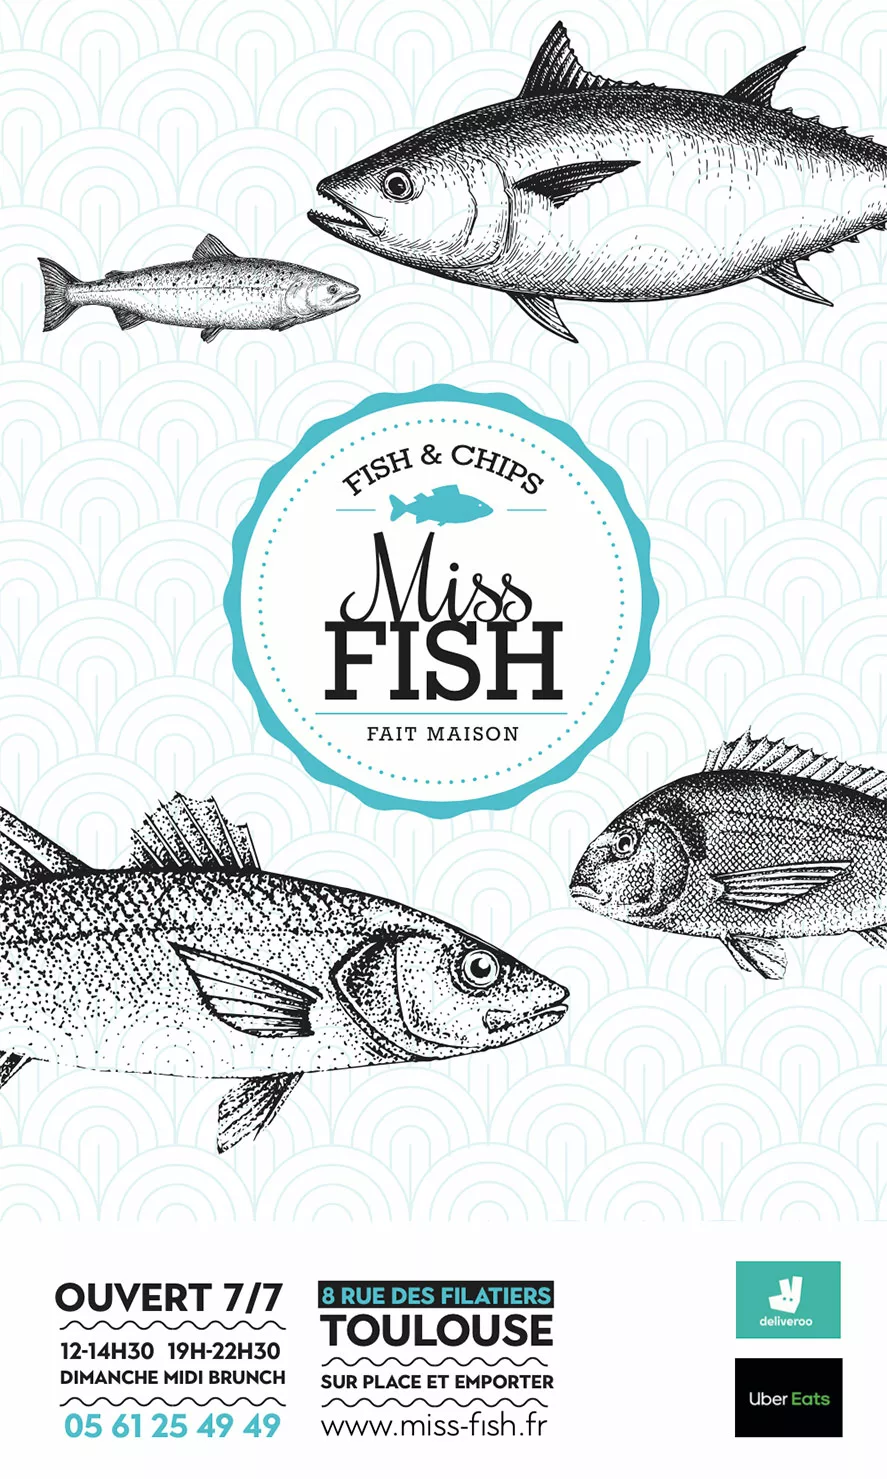 couverture de menu miss fish restaurant